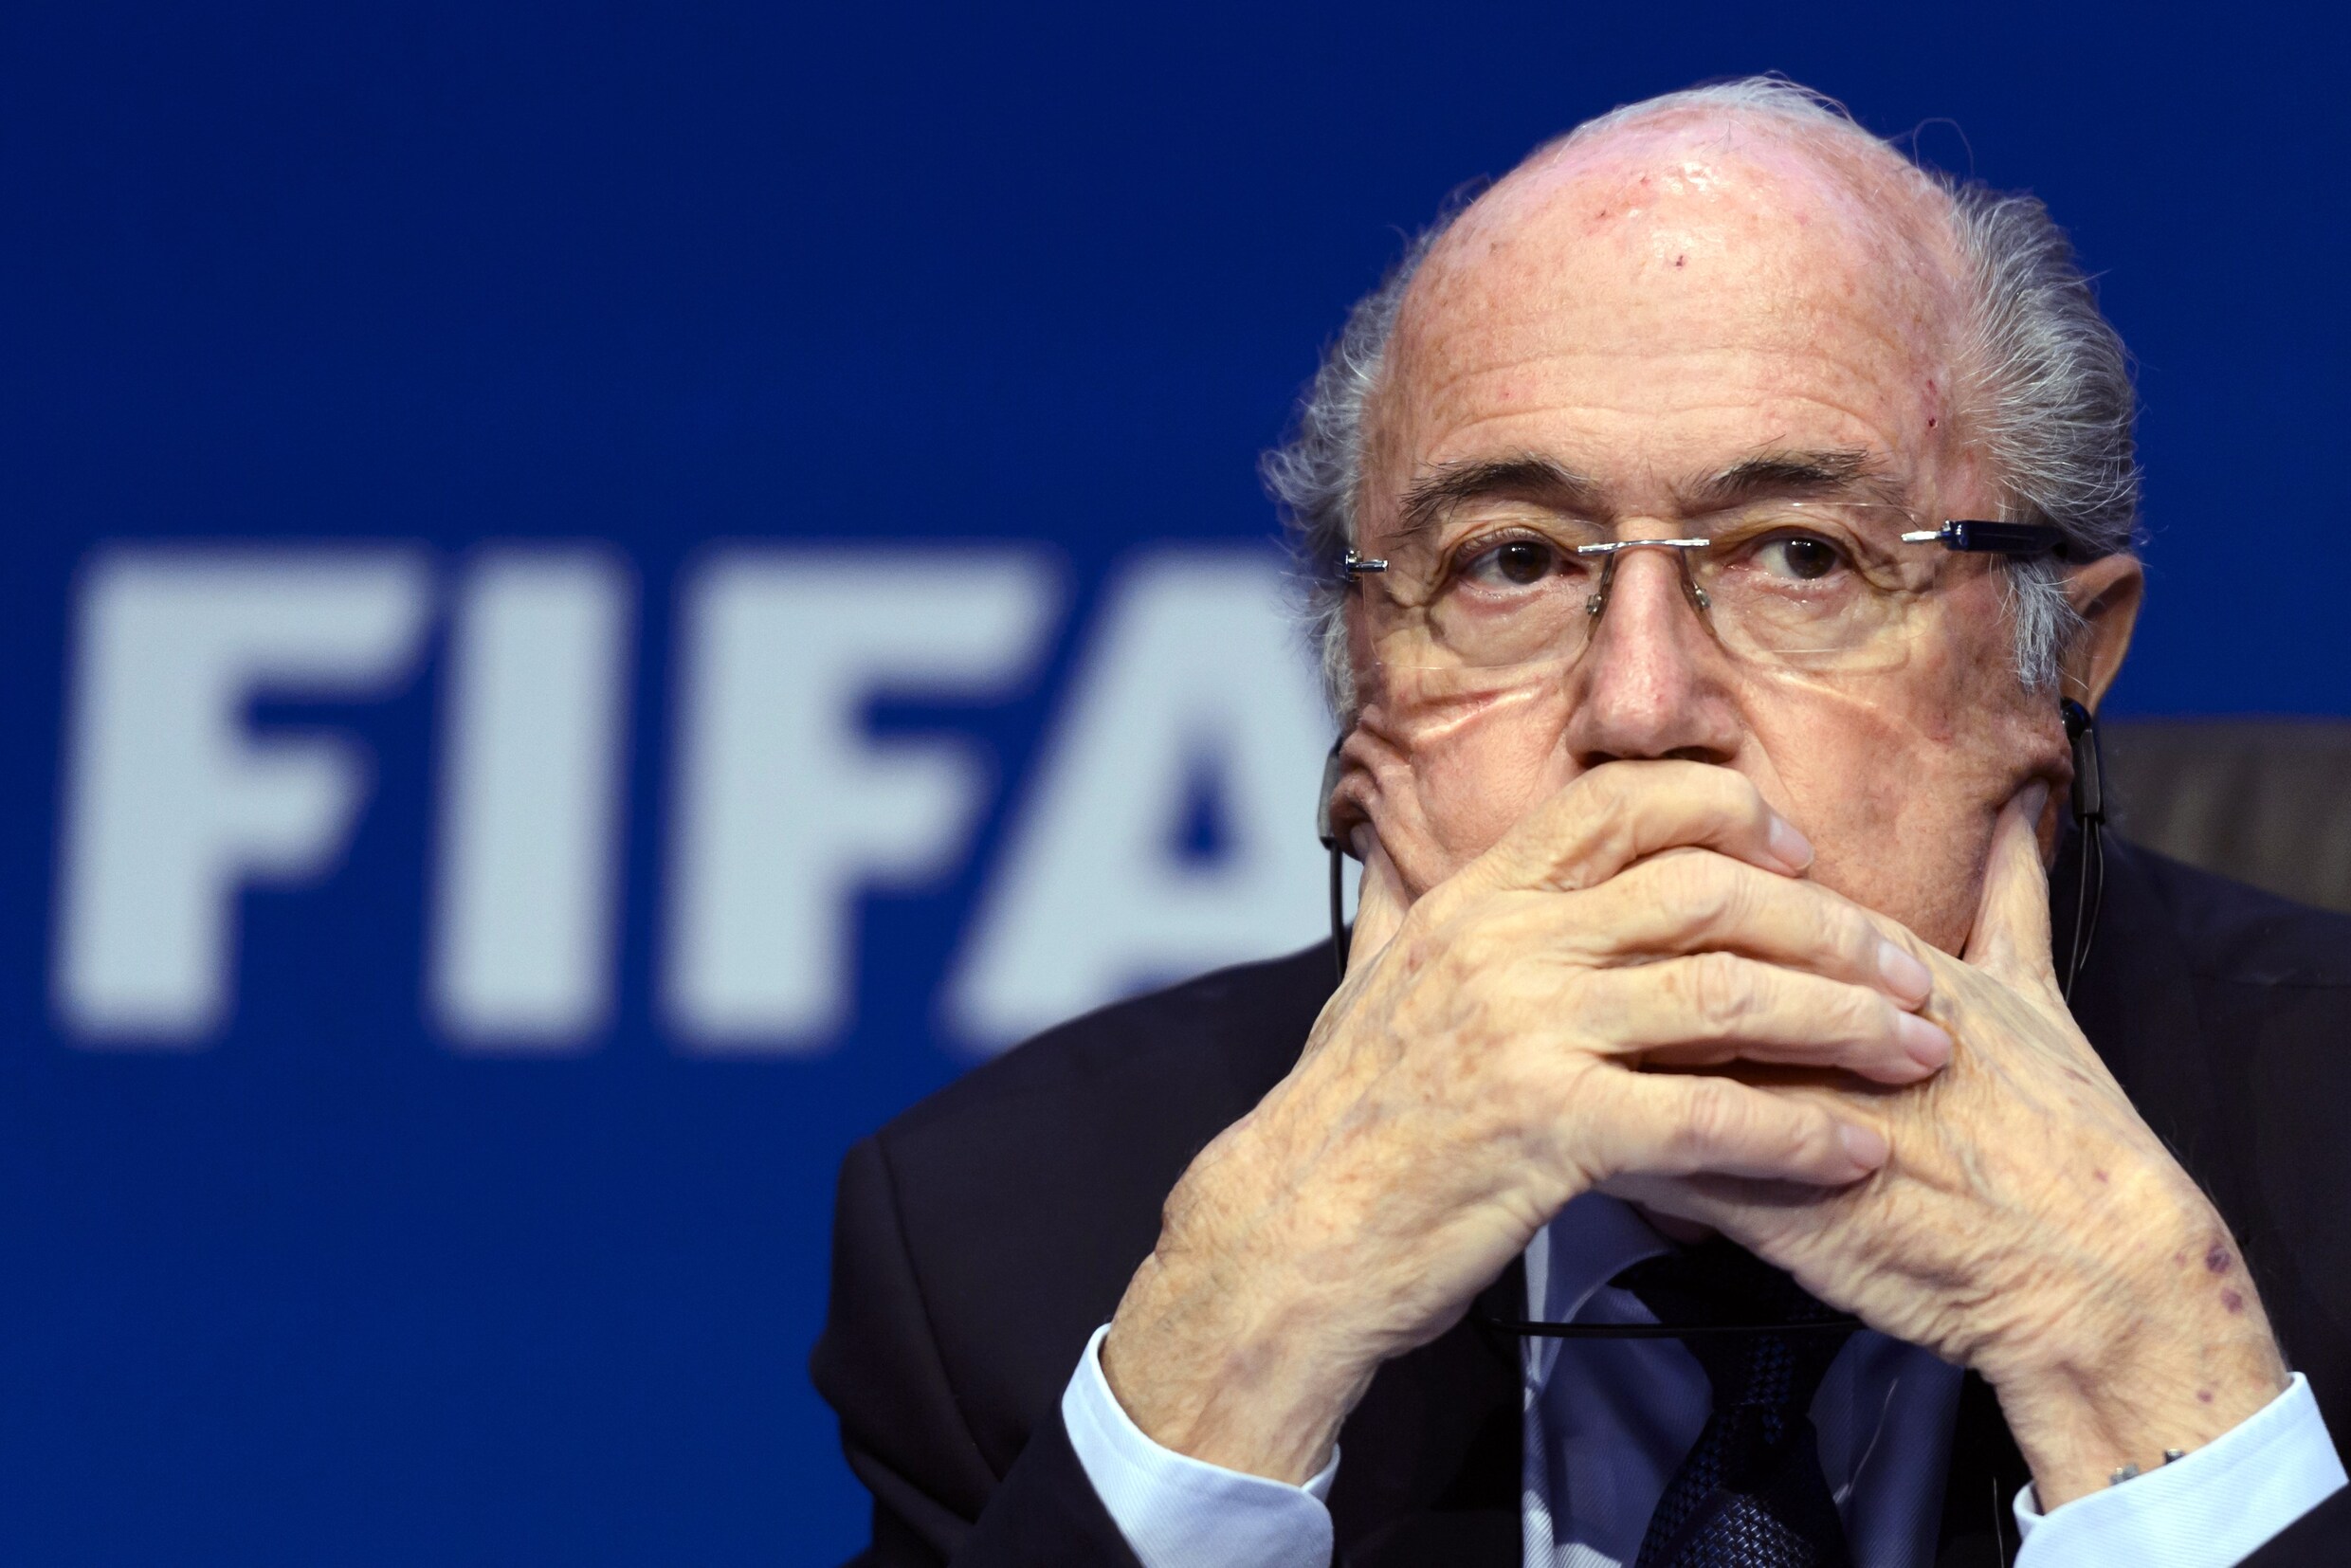 "Als Blatter komt opdagen op verkiezingscongres, gooien we hem eruit met security"